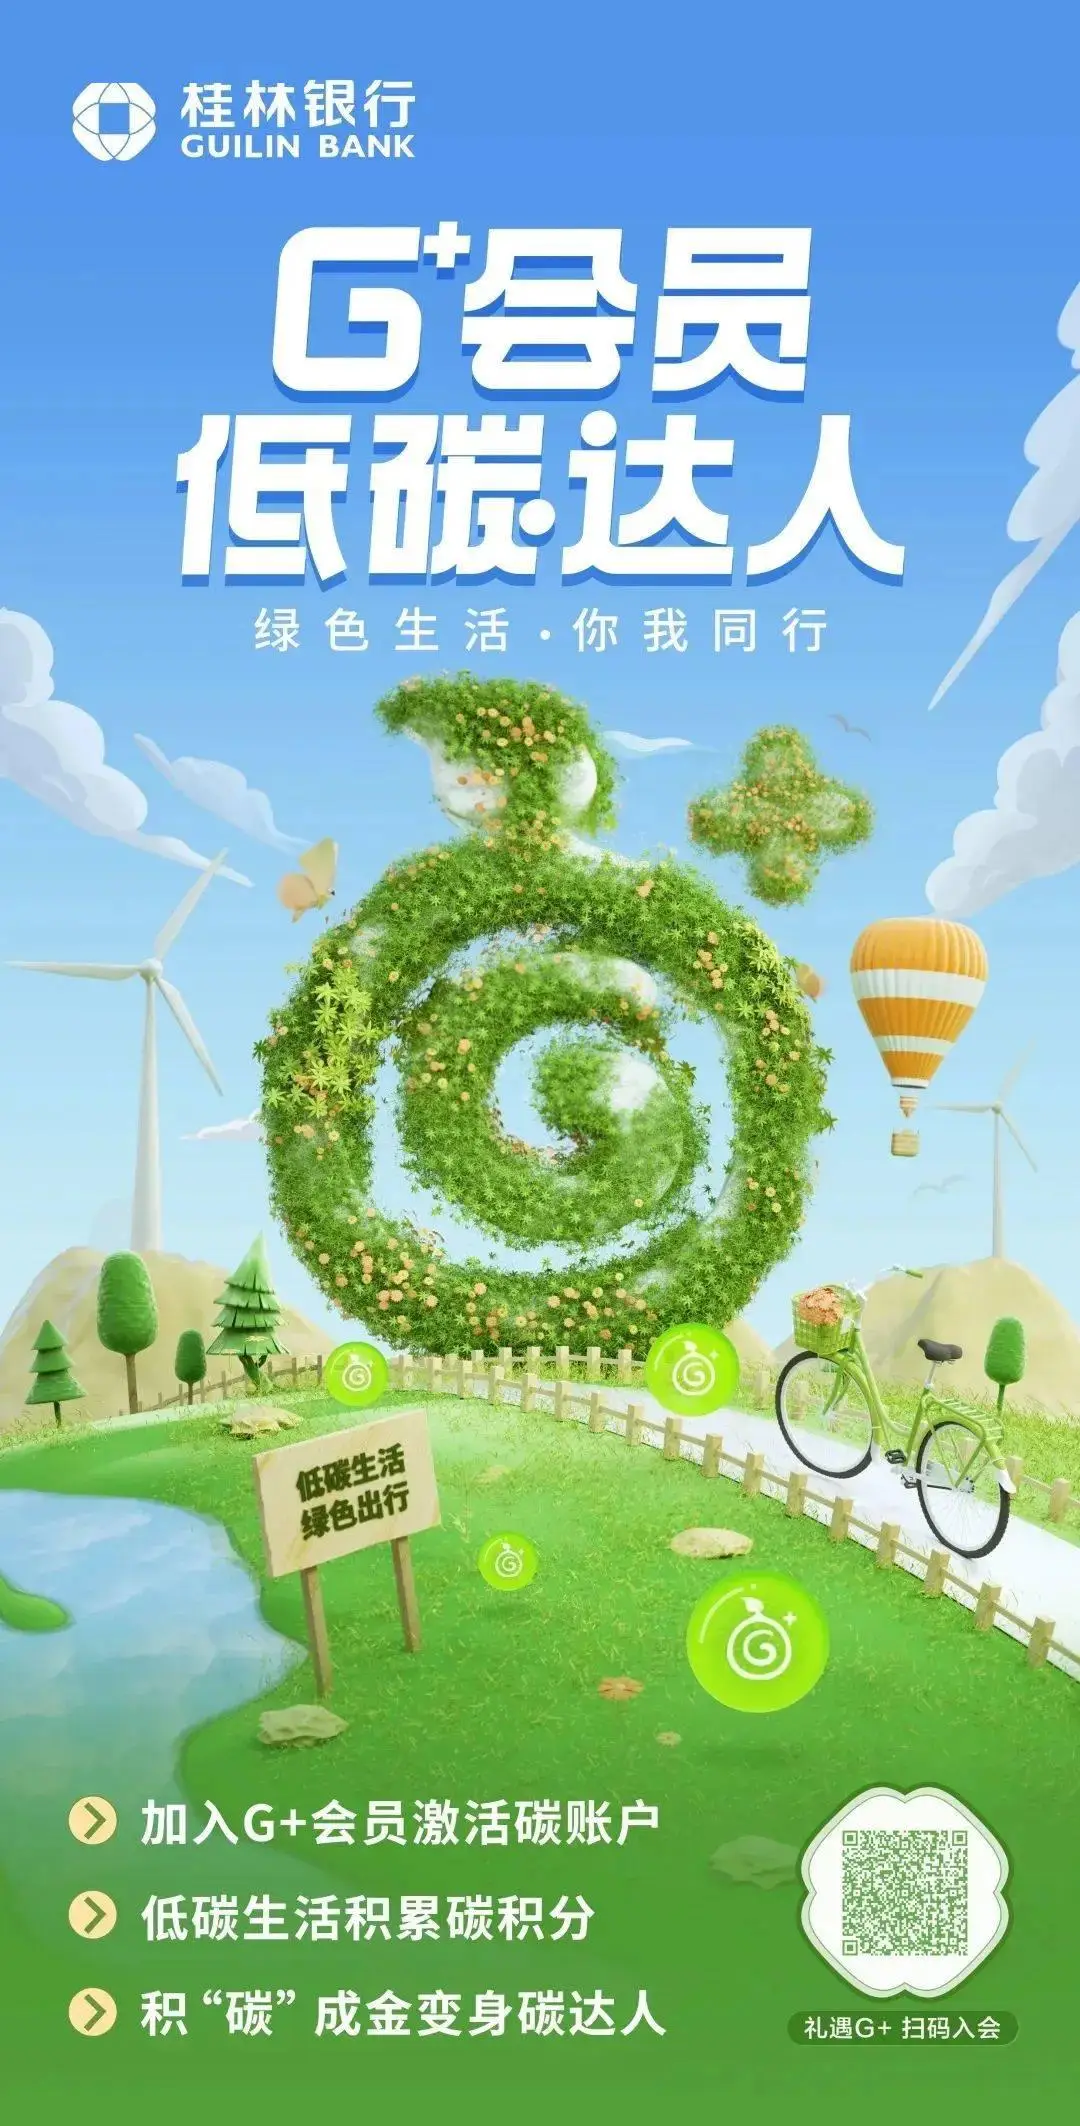 桂林5G网络建设：推动经济社会向更高效益的方向前进  第2张